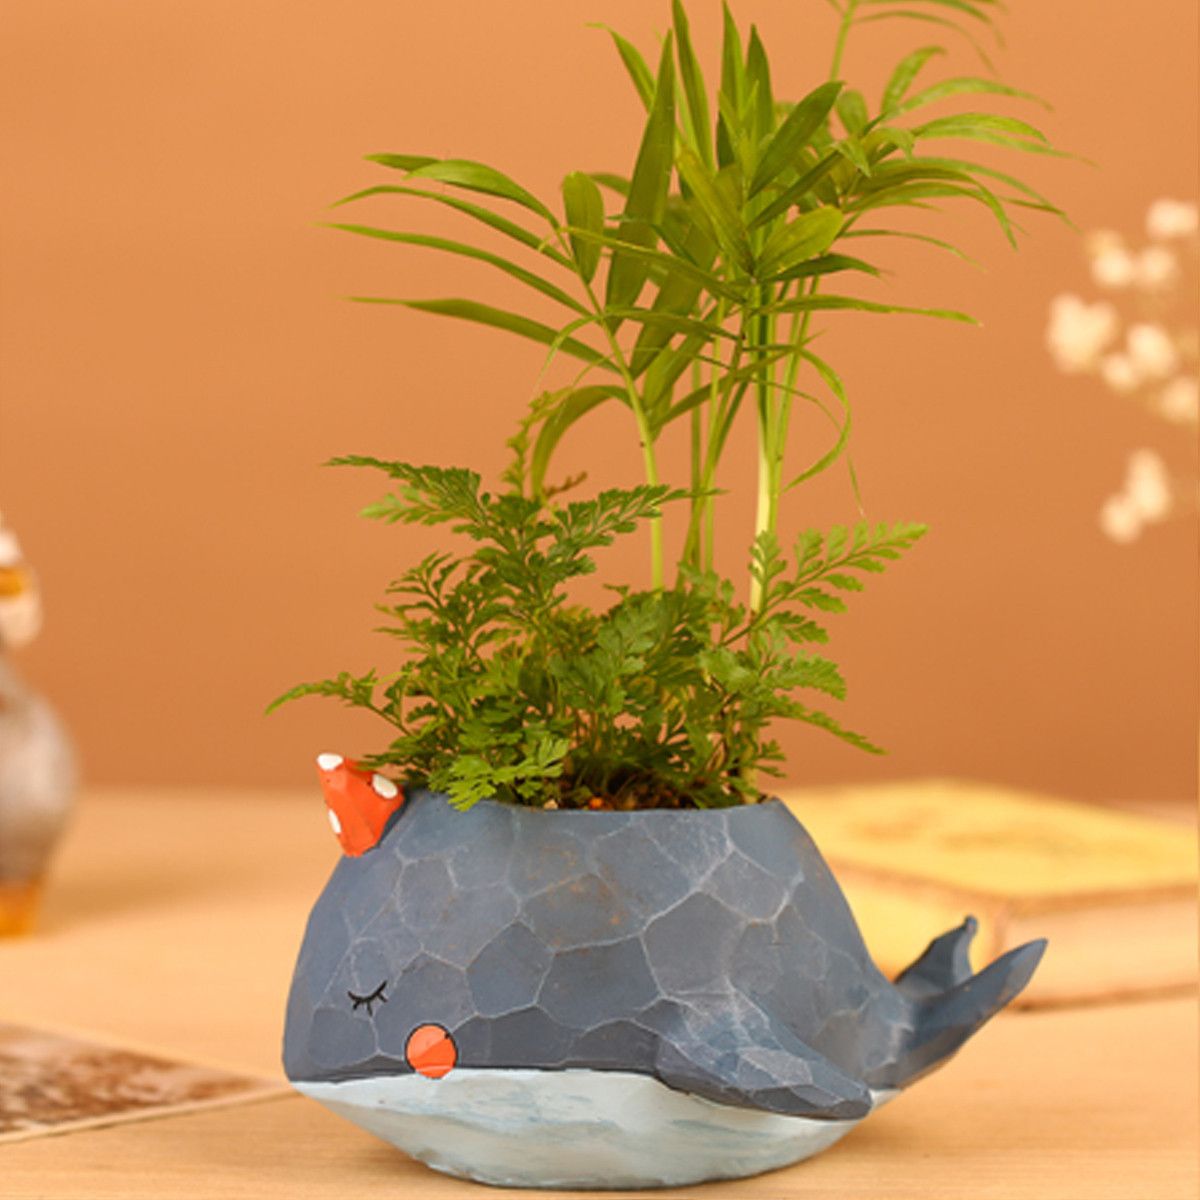 Whale-Planter-Resin-Potted-Plants-Succulent-Cactus-Flower-Pot-Craft-Ornaments-1473194